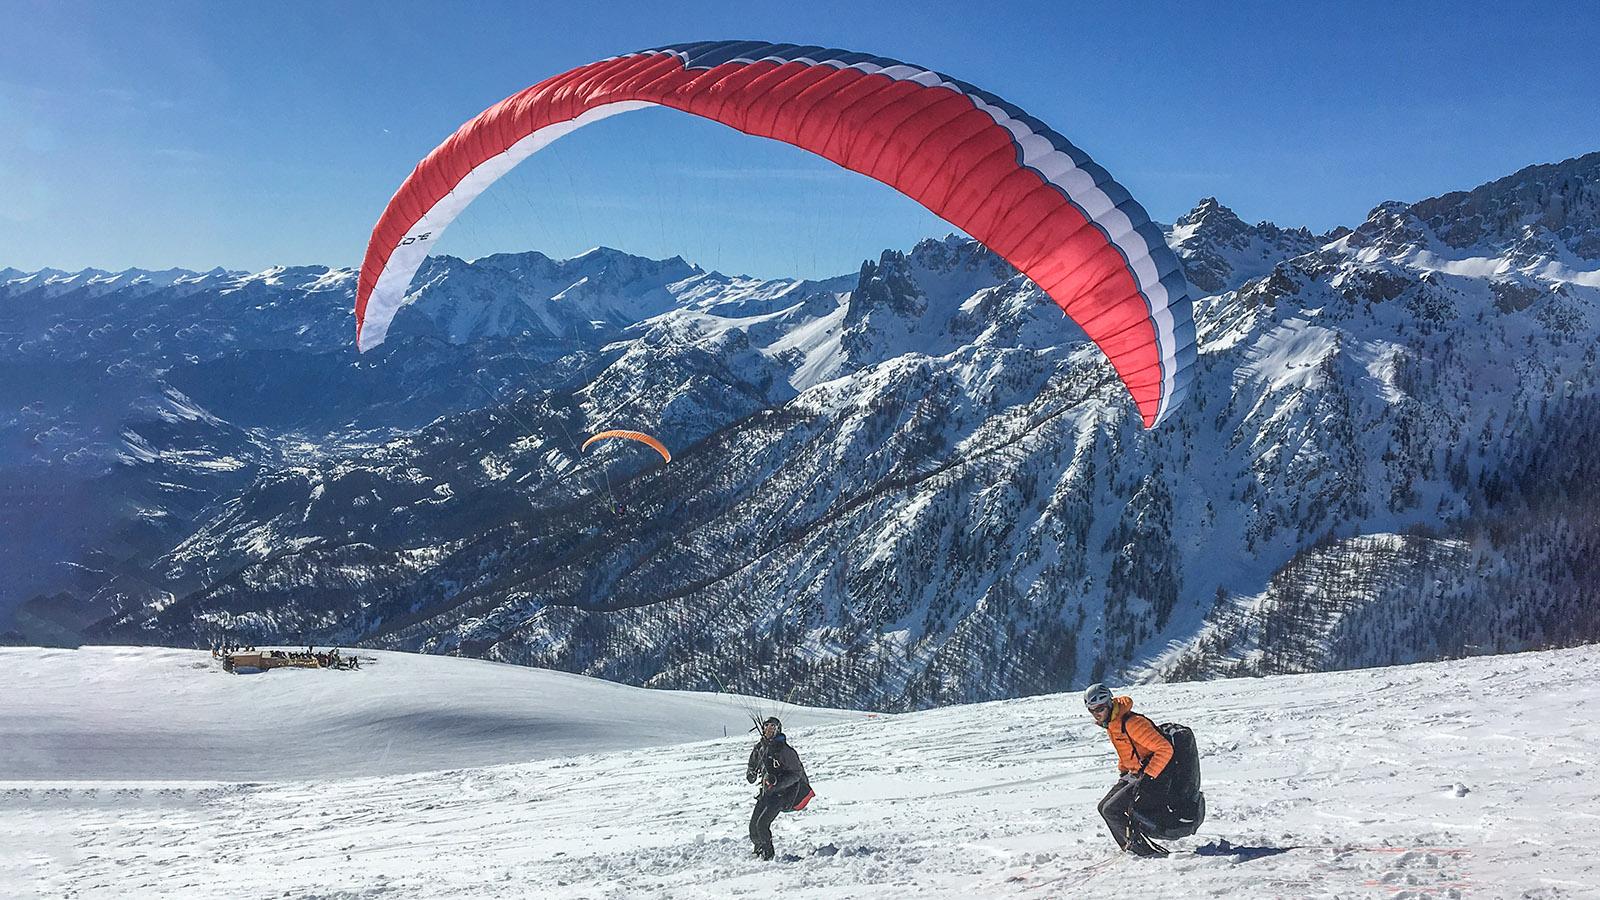 Gleitschirmflieger am Prorel im Skigebiet von Serre Chevalier. Foto: Hilke Maunder